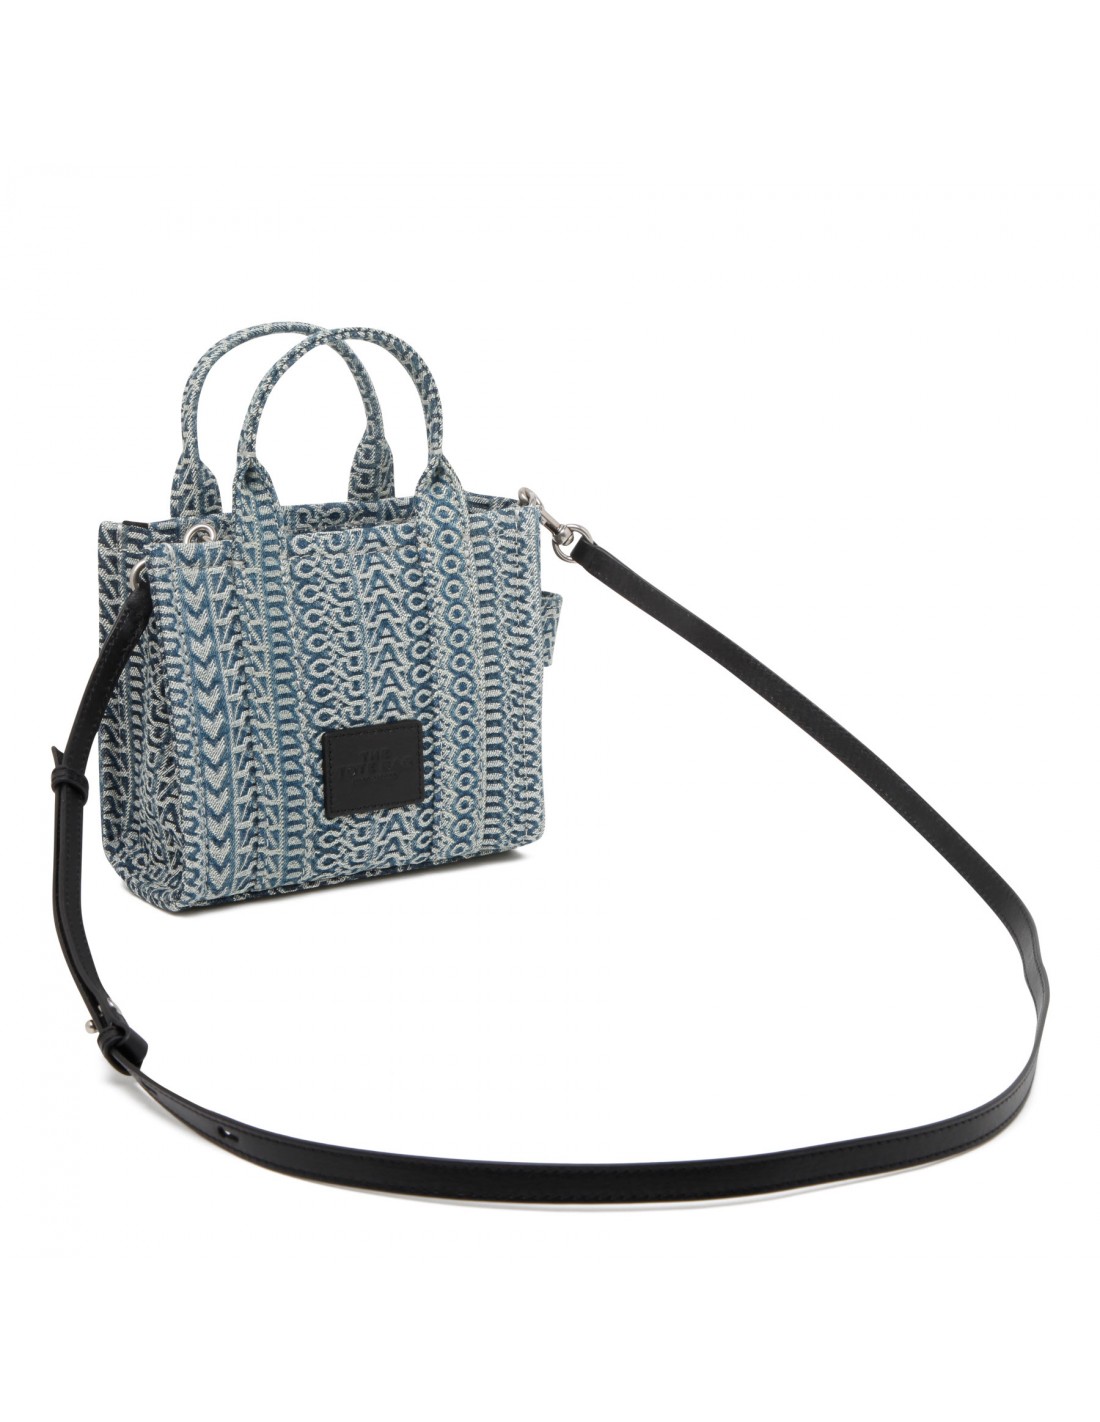 The mini tote bag  Le Noir - Unconventional Luxury